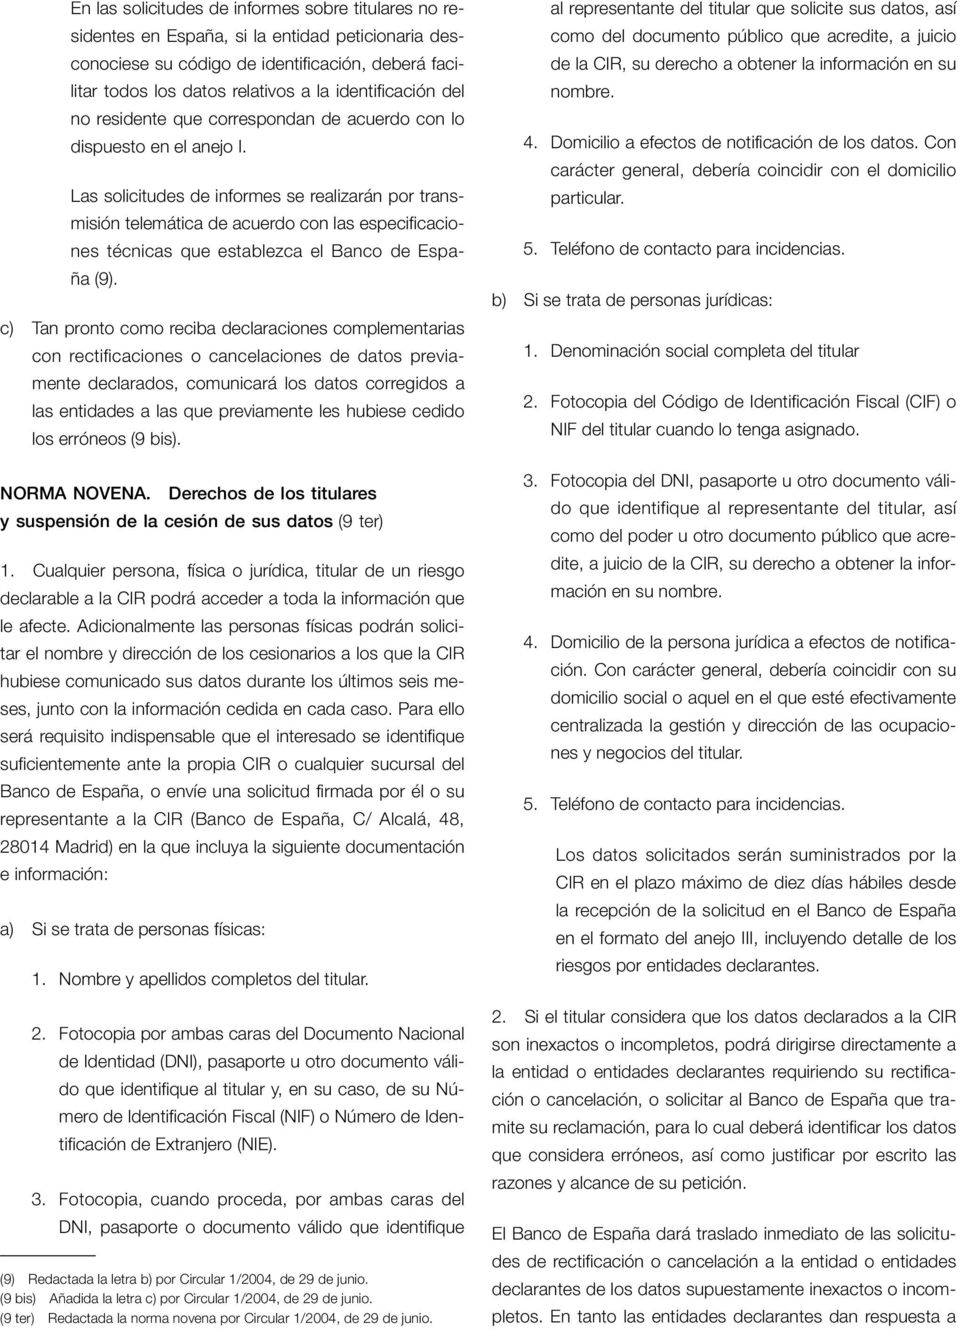 Las solicitudes de informes se realizarán por transmisión telemática de acuerdo con las especificaciones técnicas que establezca el Banco de España (9).